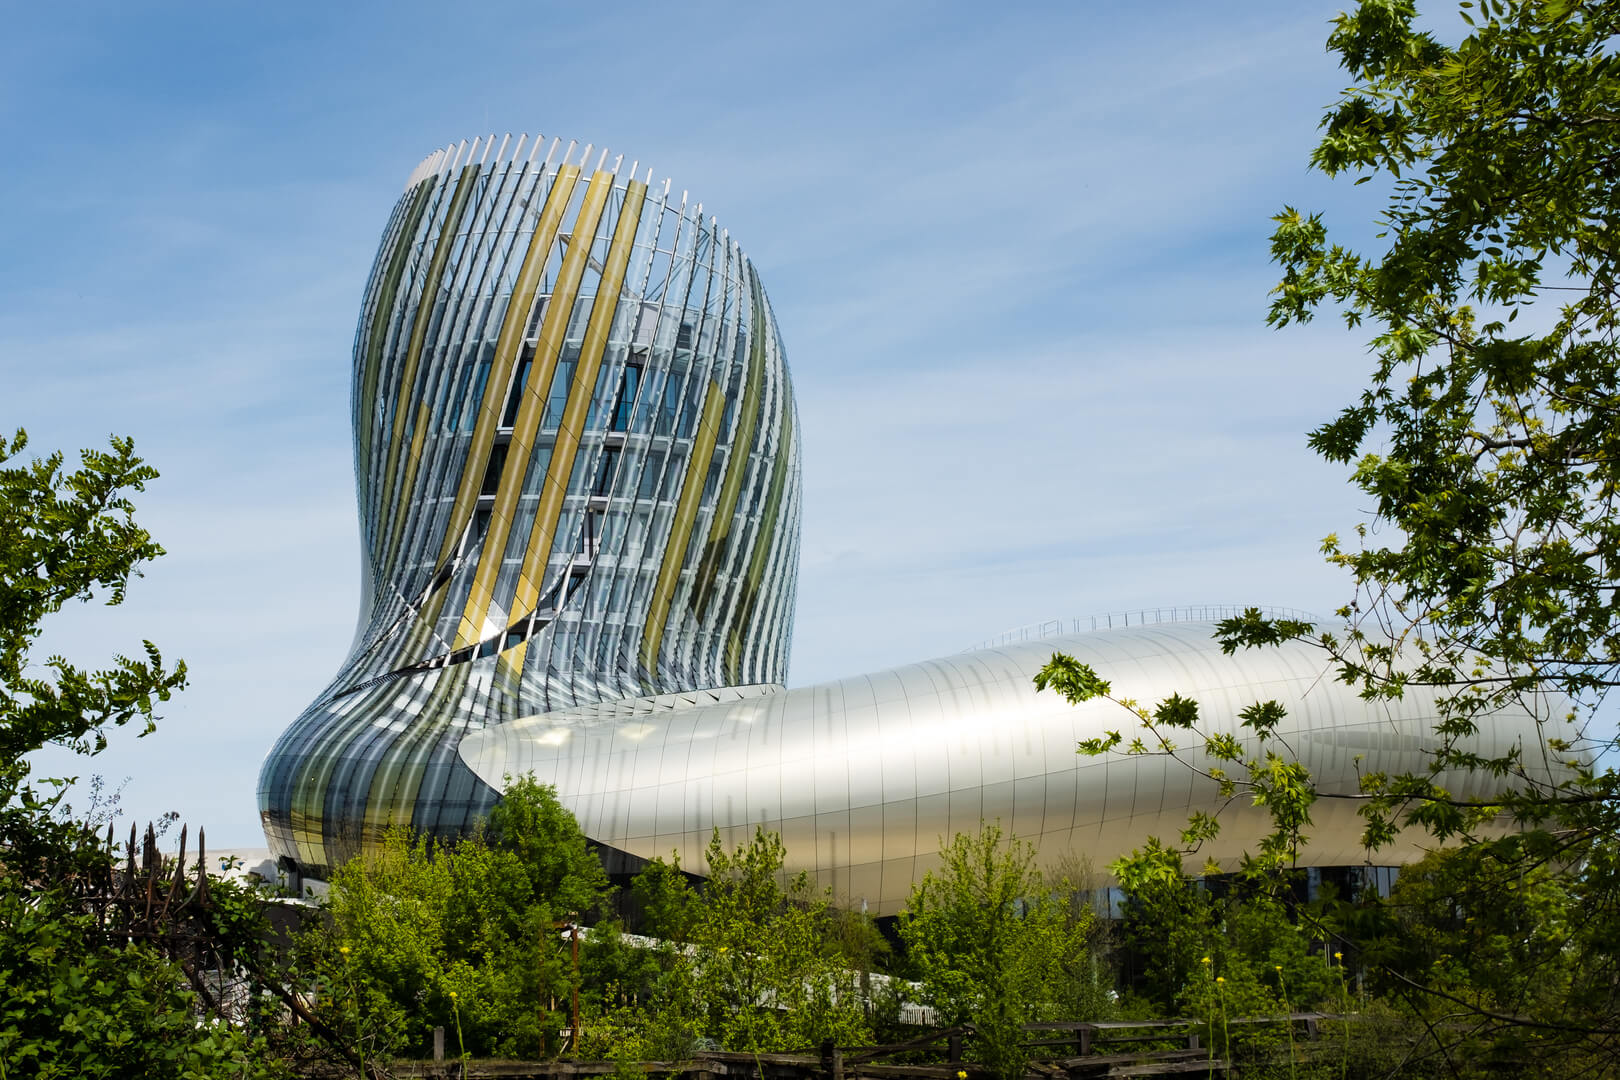 La cite du vin, the Wine museum of Bordeaux near to Garonne river. Bordeaux, Aquitaine. France.